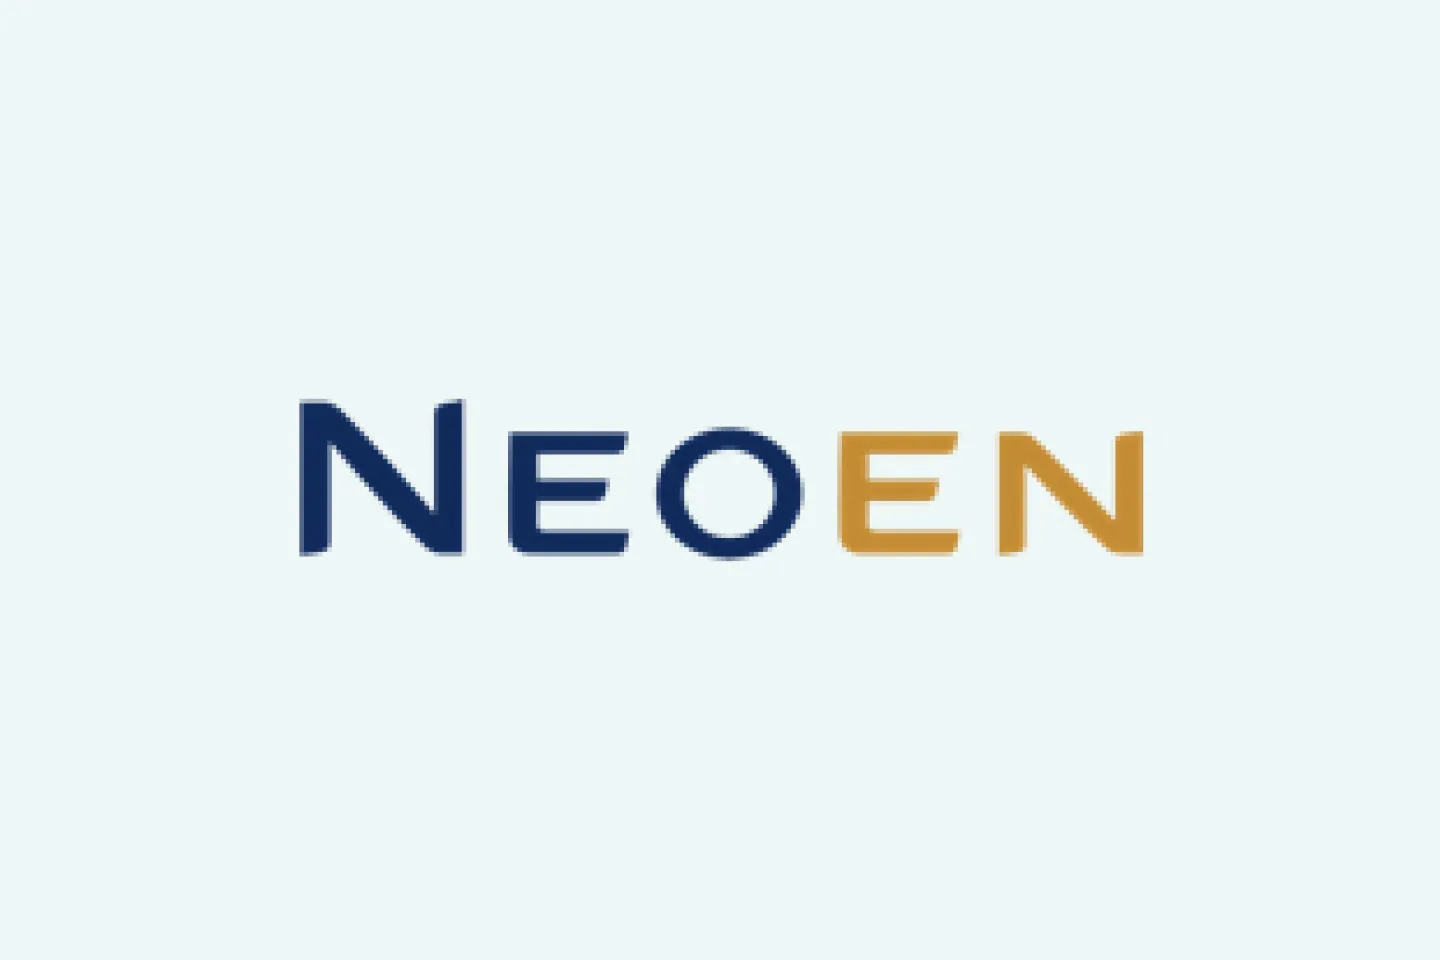 Neoen Logo